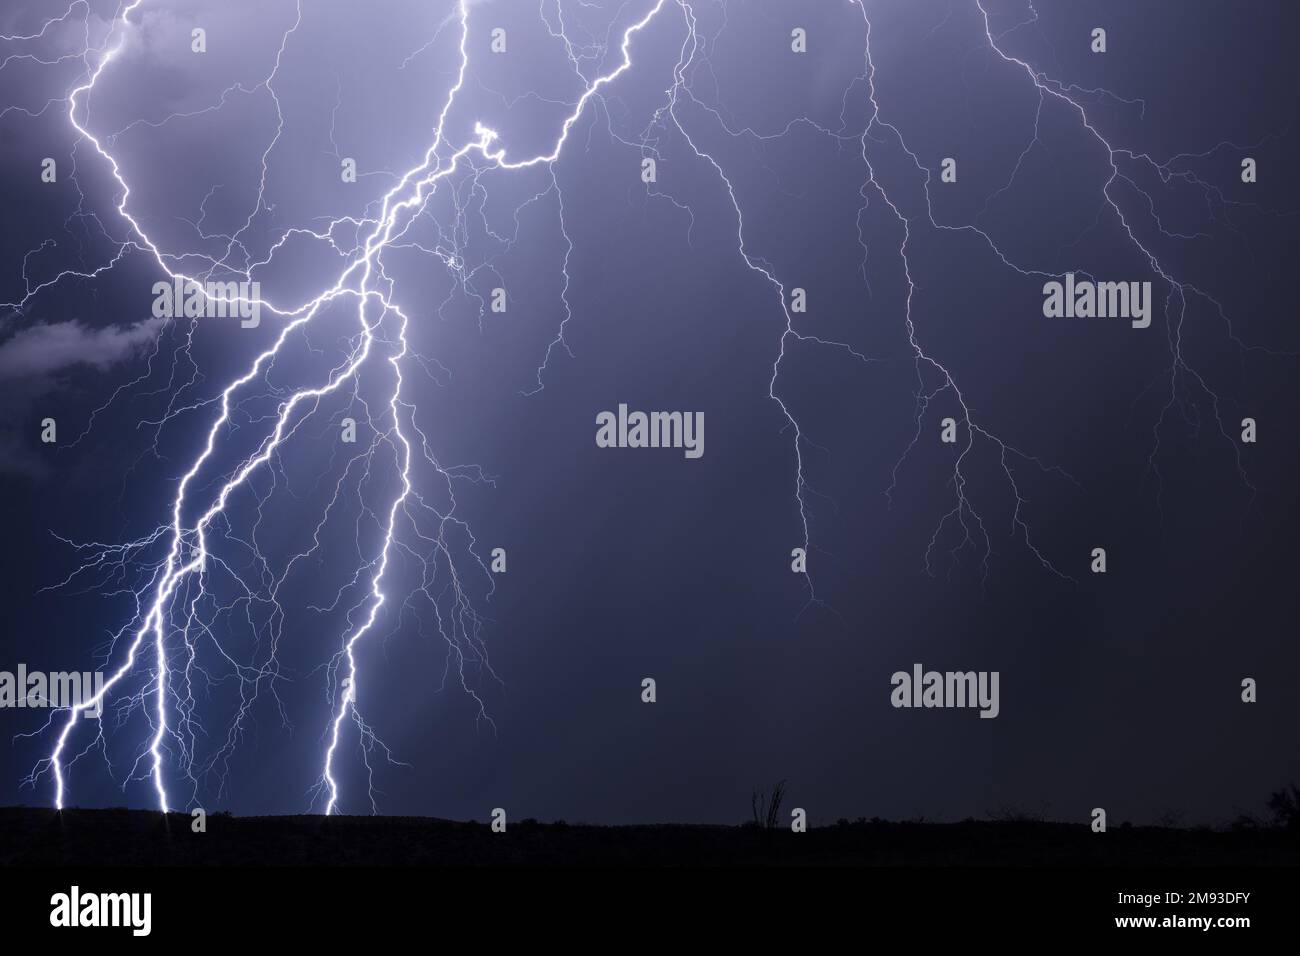 Lightning bolts in the night sky from a thunderstorm near Phoenix, Arizona Stock Photo